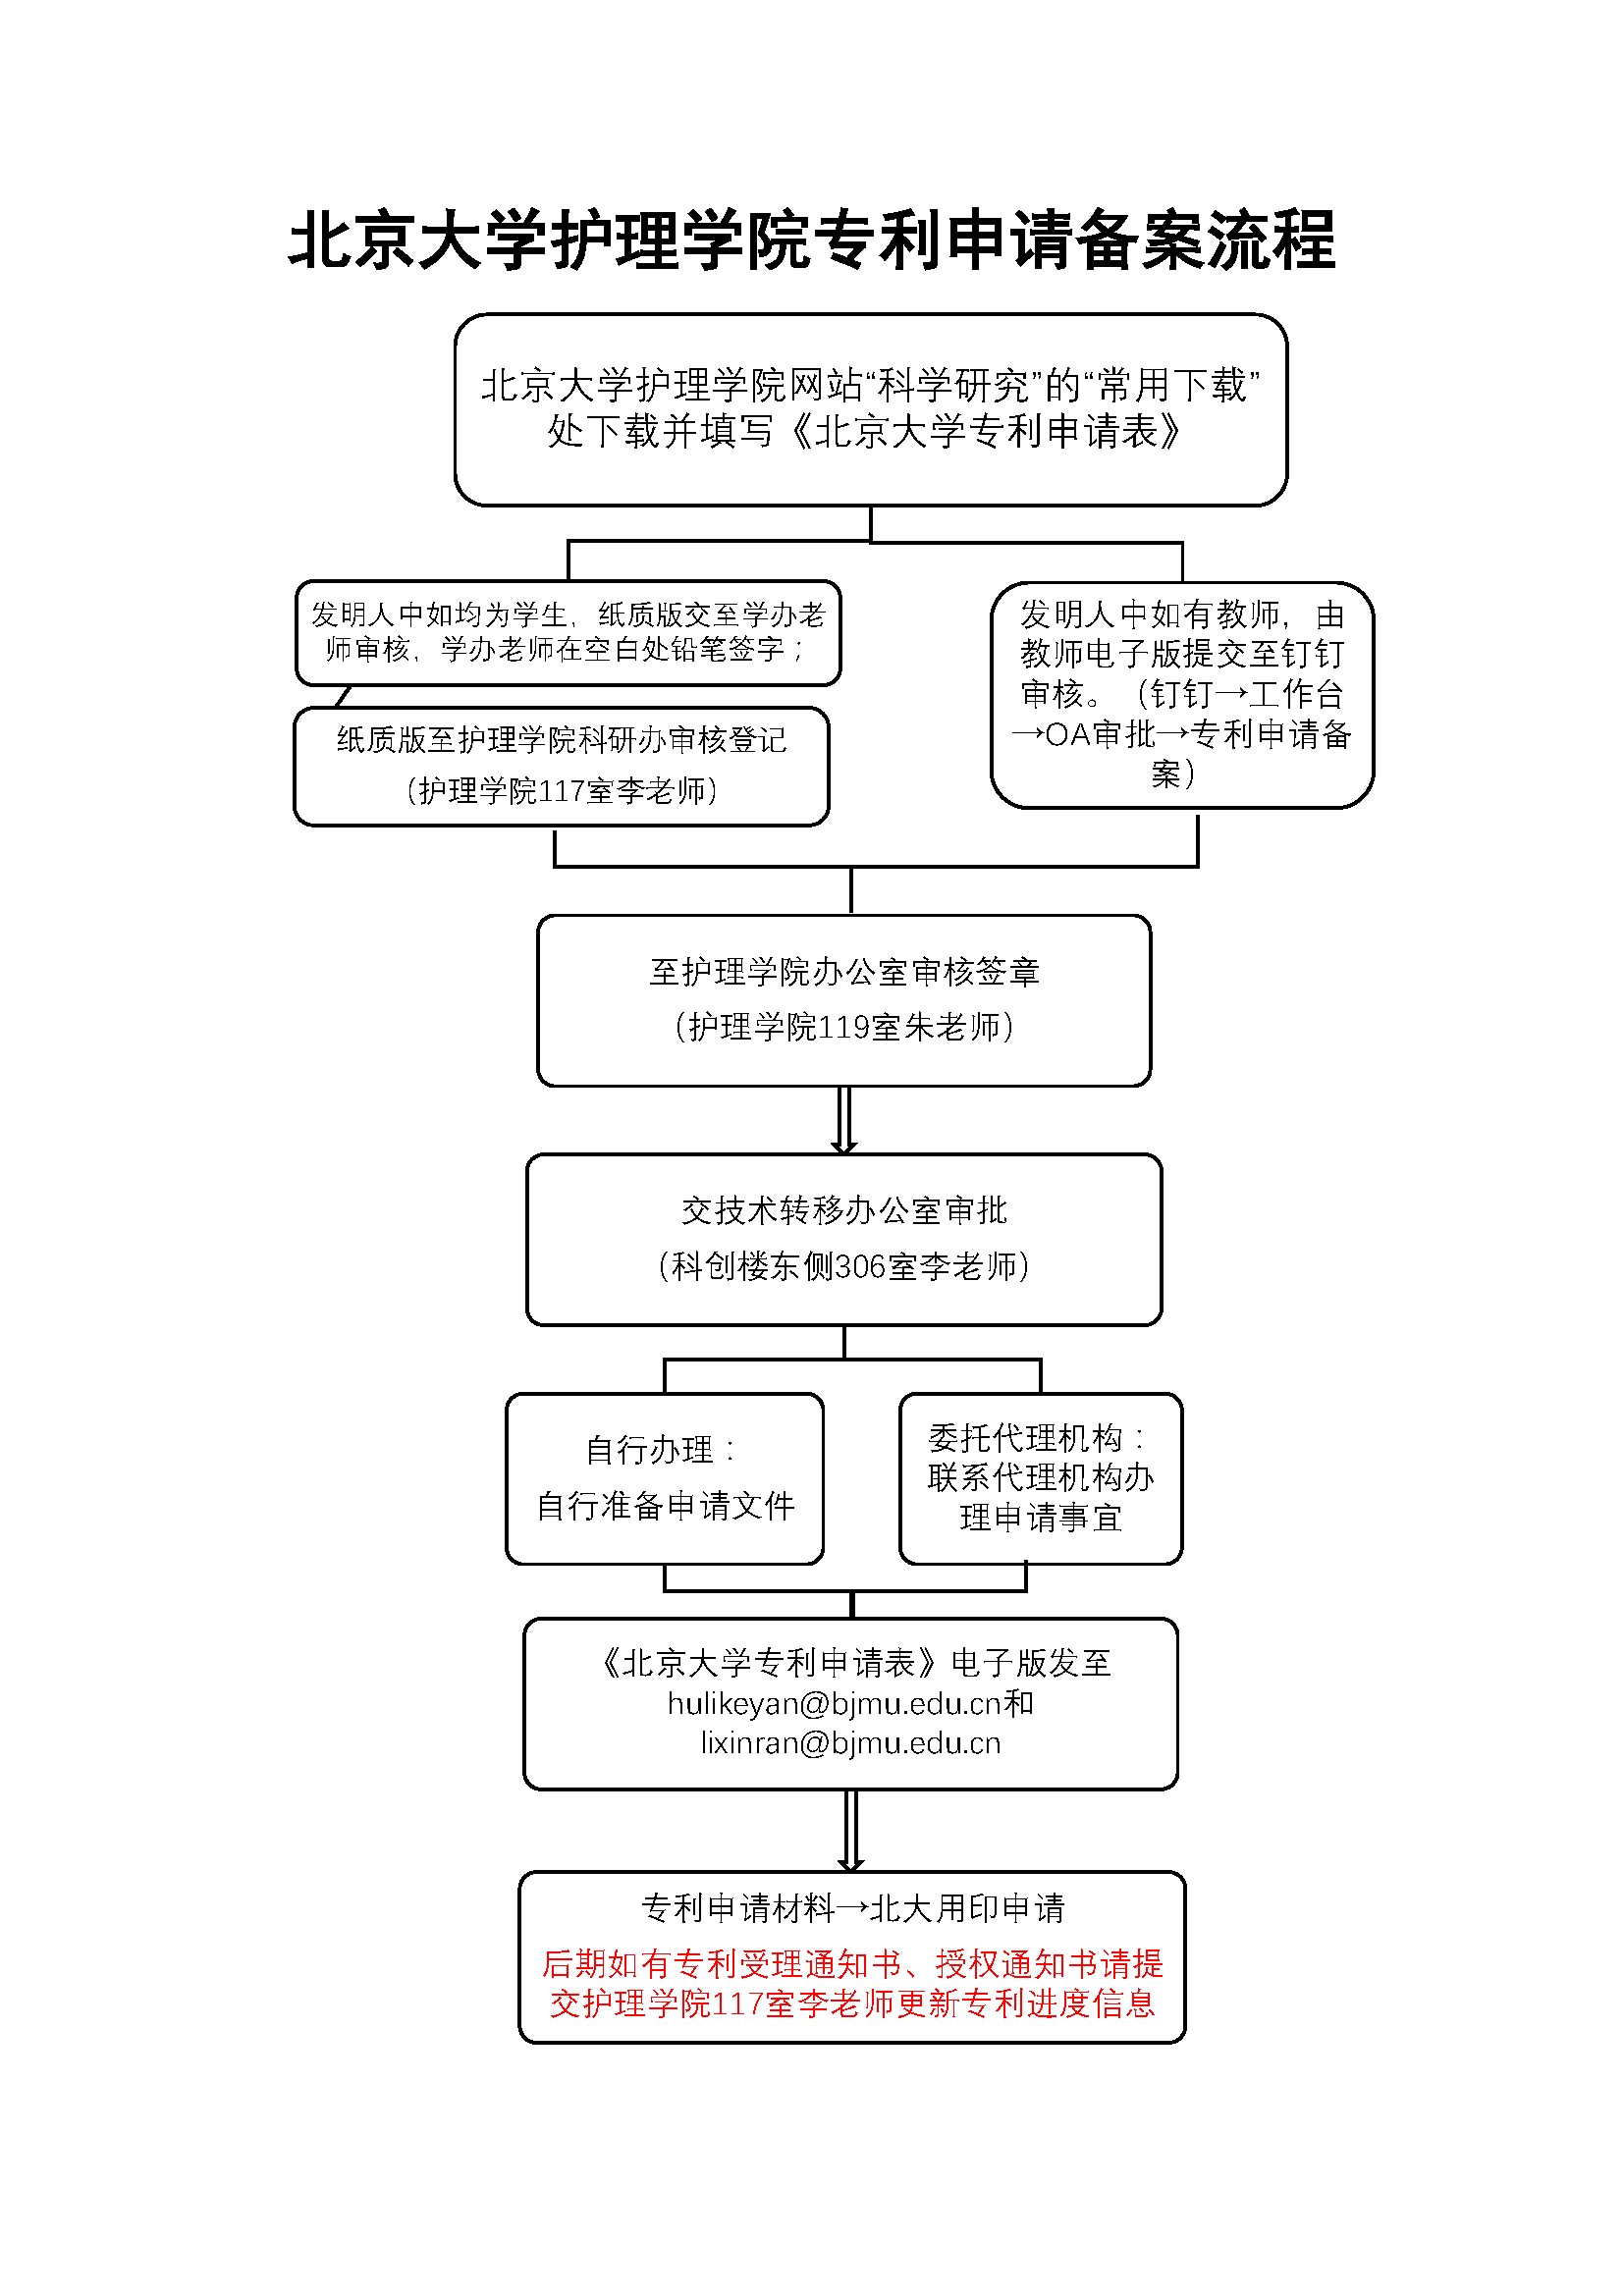 北京大学护理学院专利申请备案流程.png